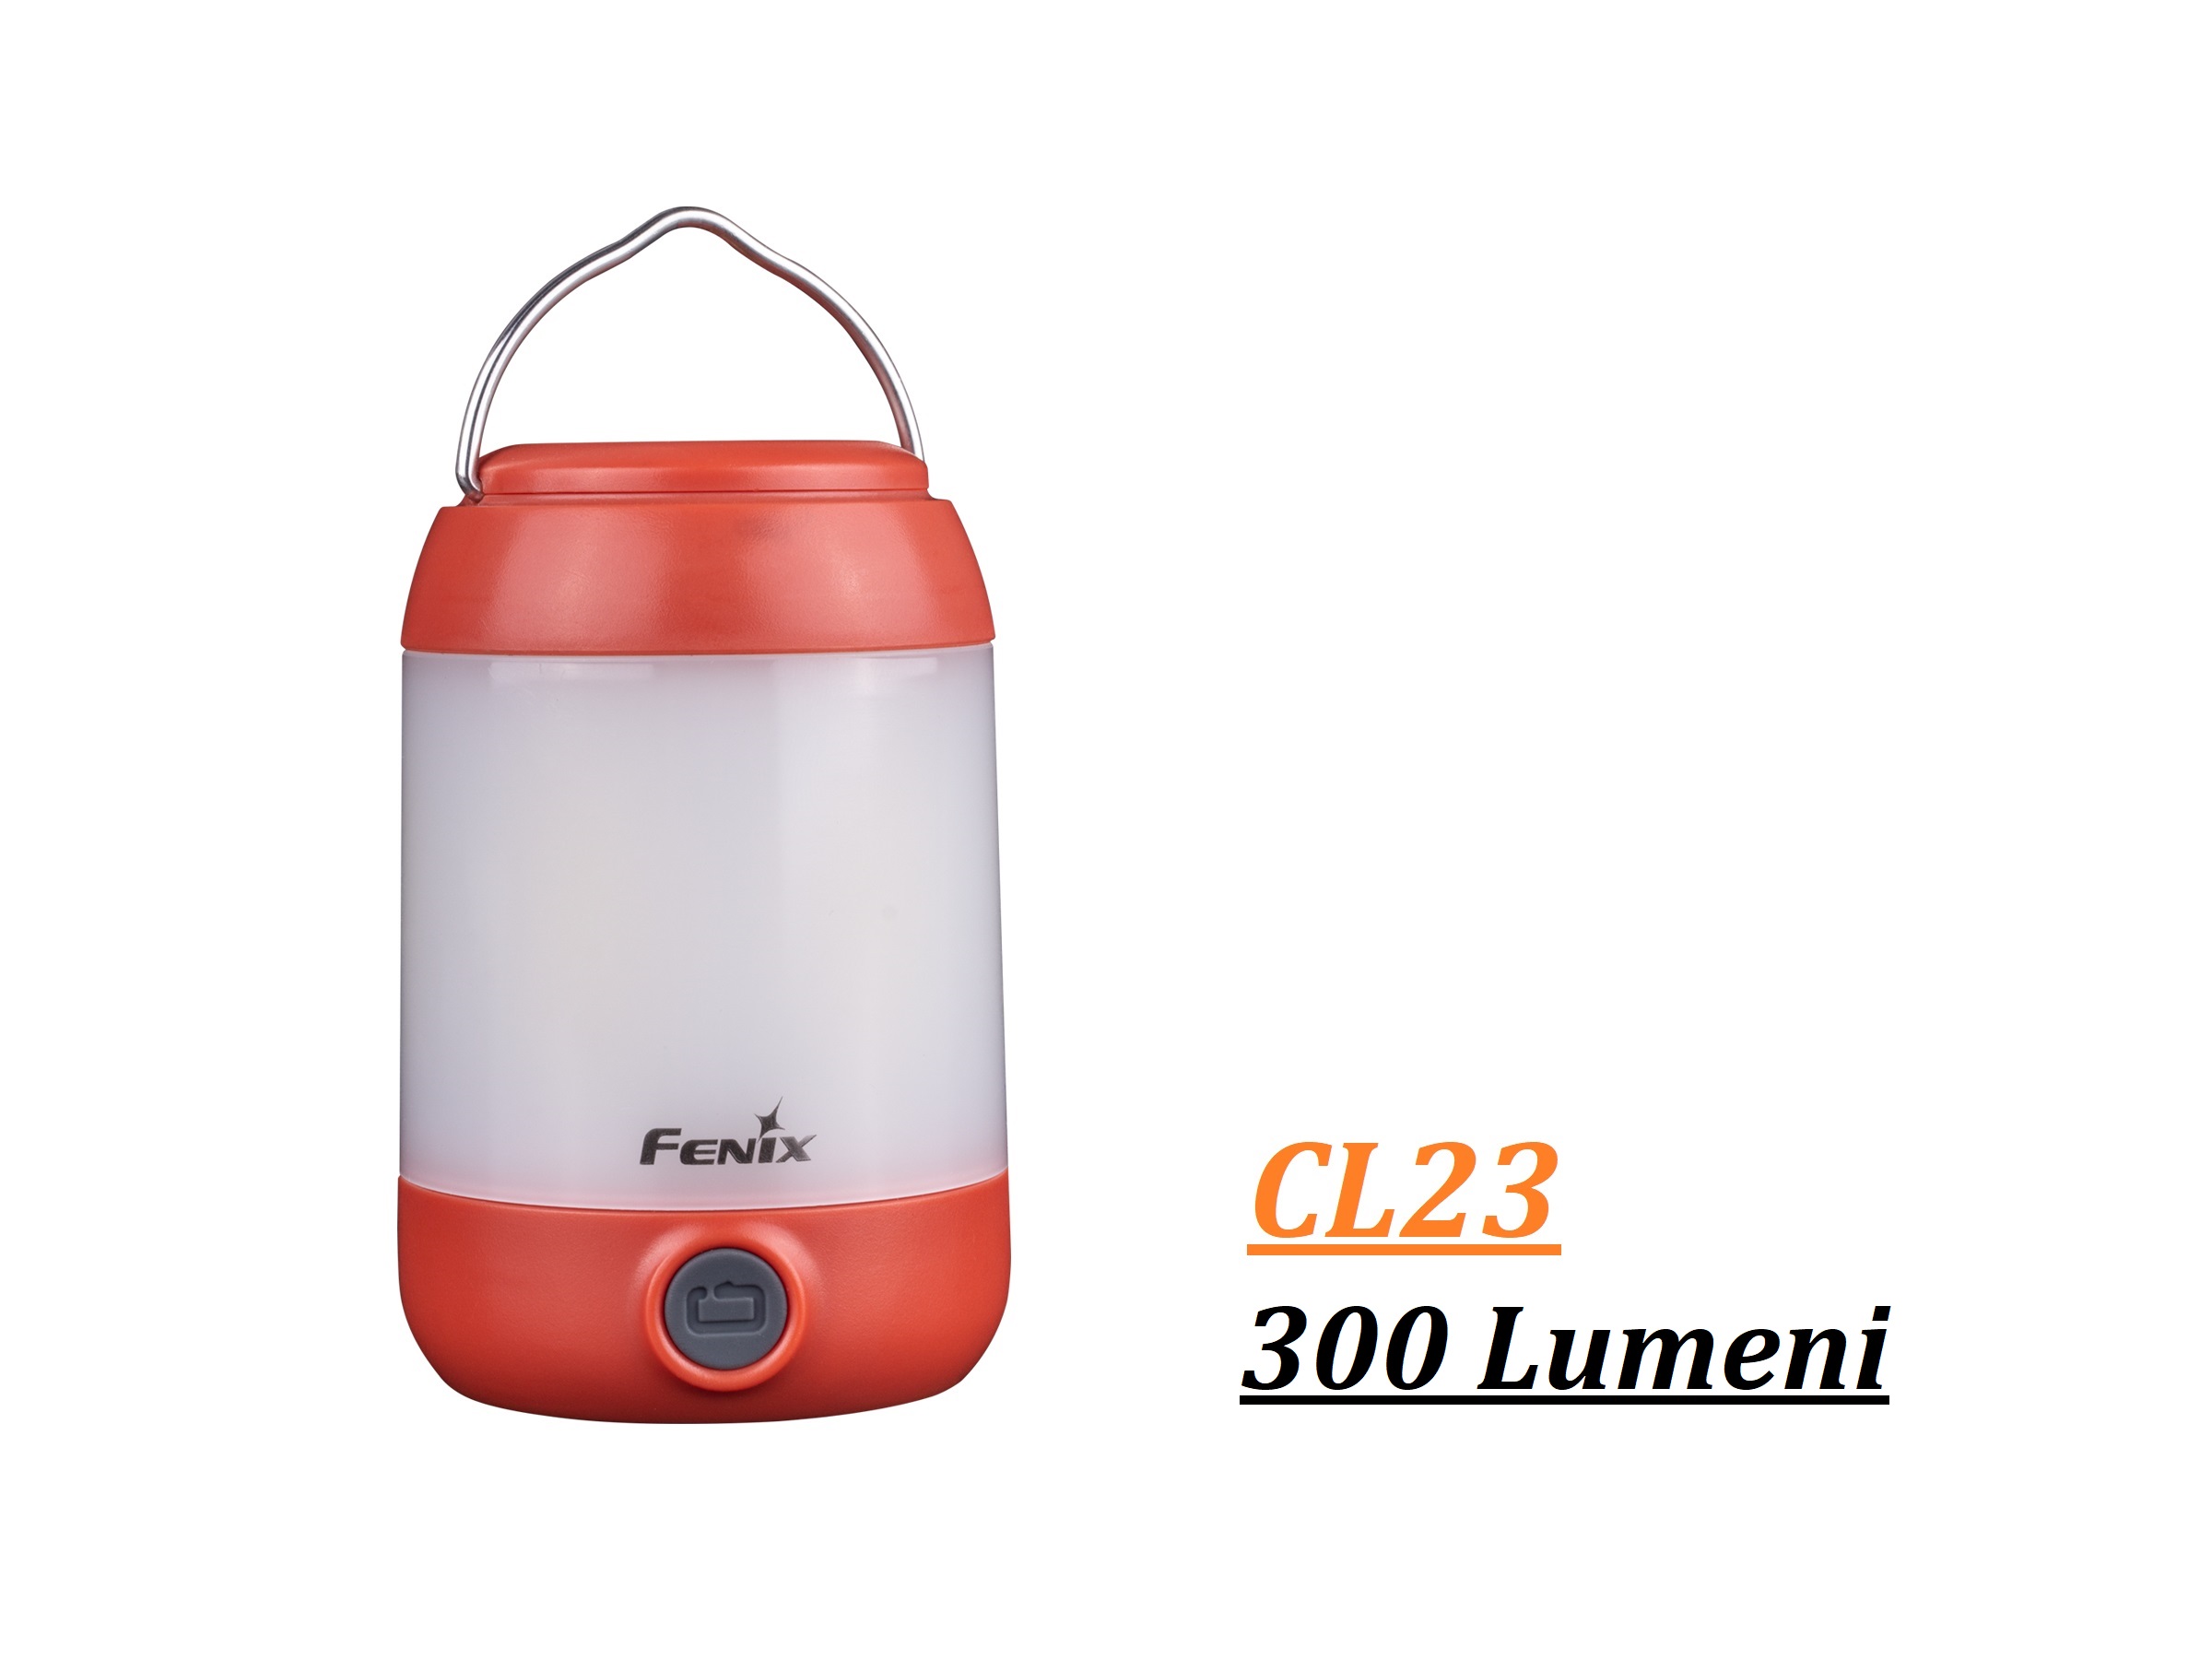 Fenix CL23 camplight